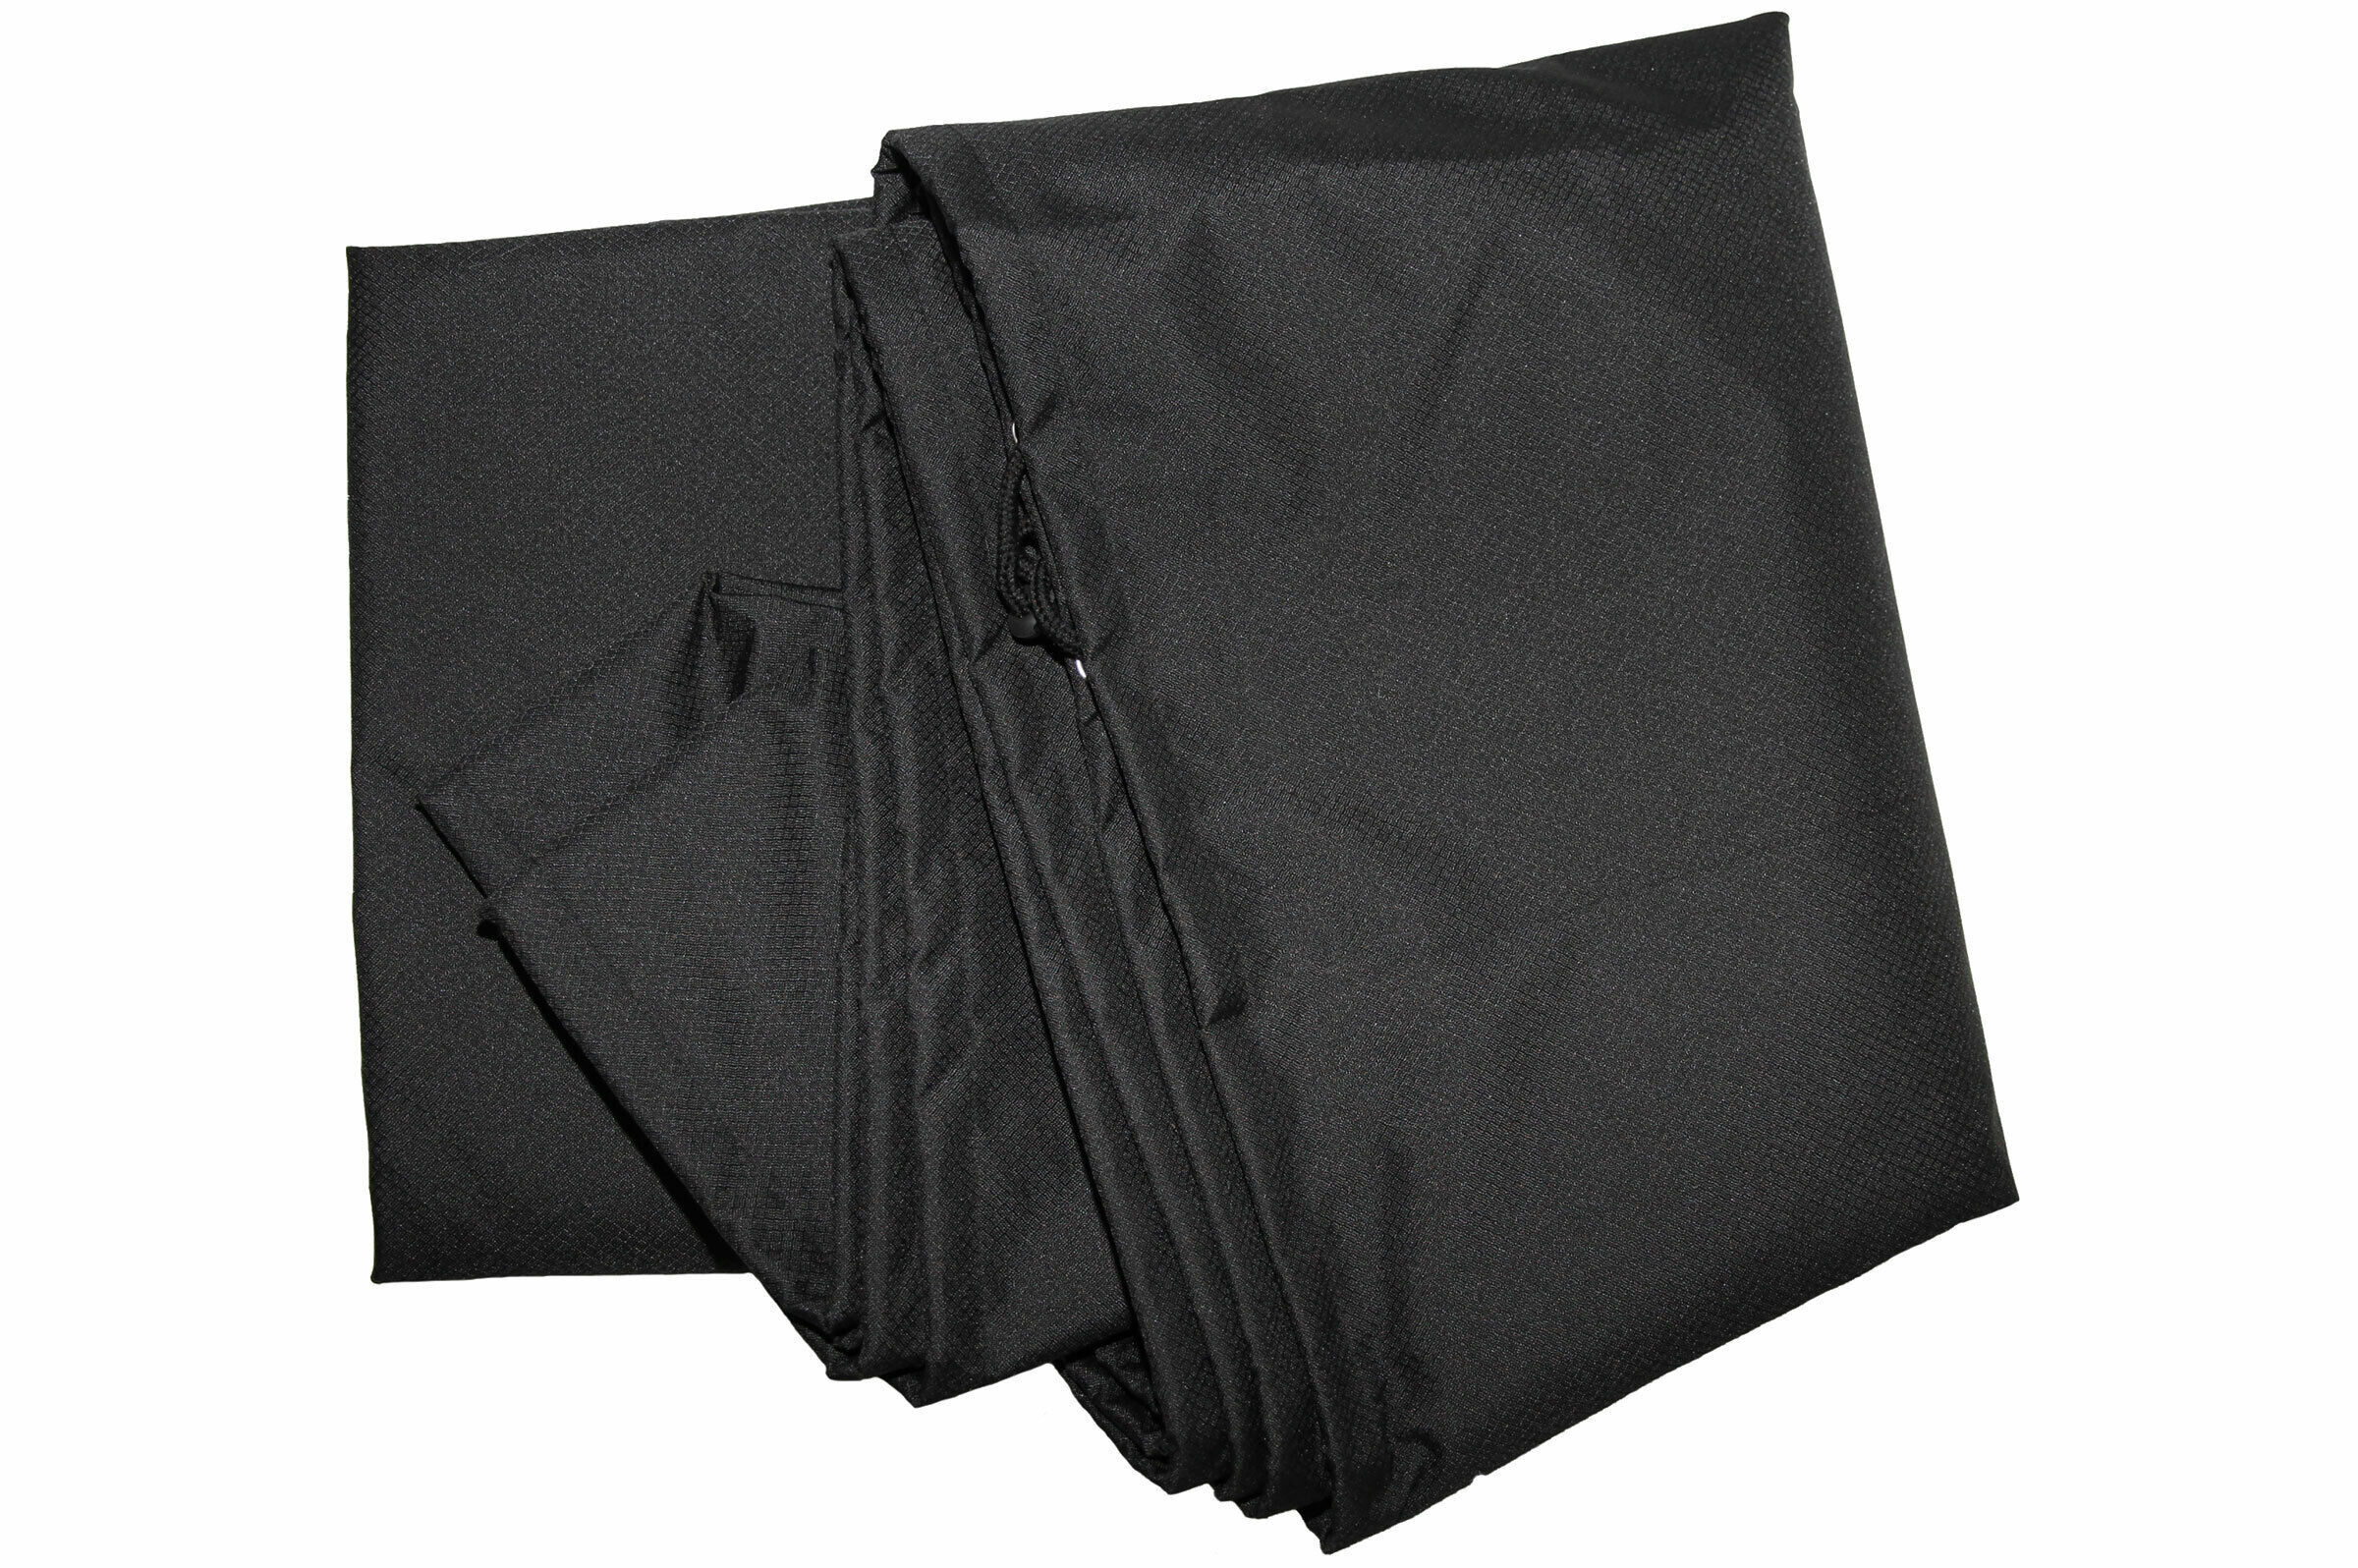 OUTTECH Schutzhülle für Chaise Lounges, schwarz, Ripstop-Polyester, 170 x 75 x 55 cm, atmungsaktiv 42JX04620